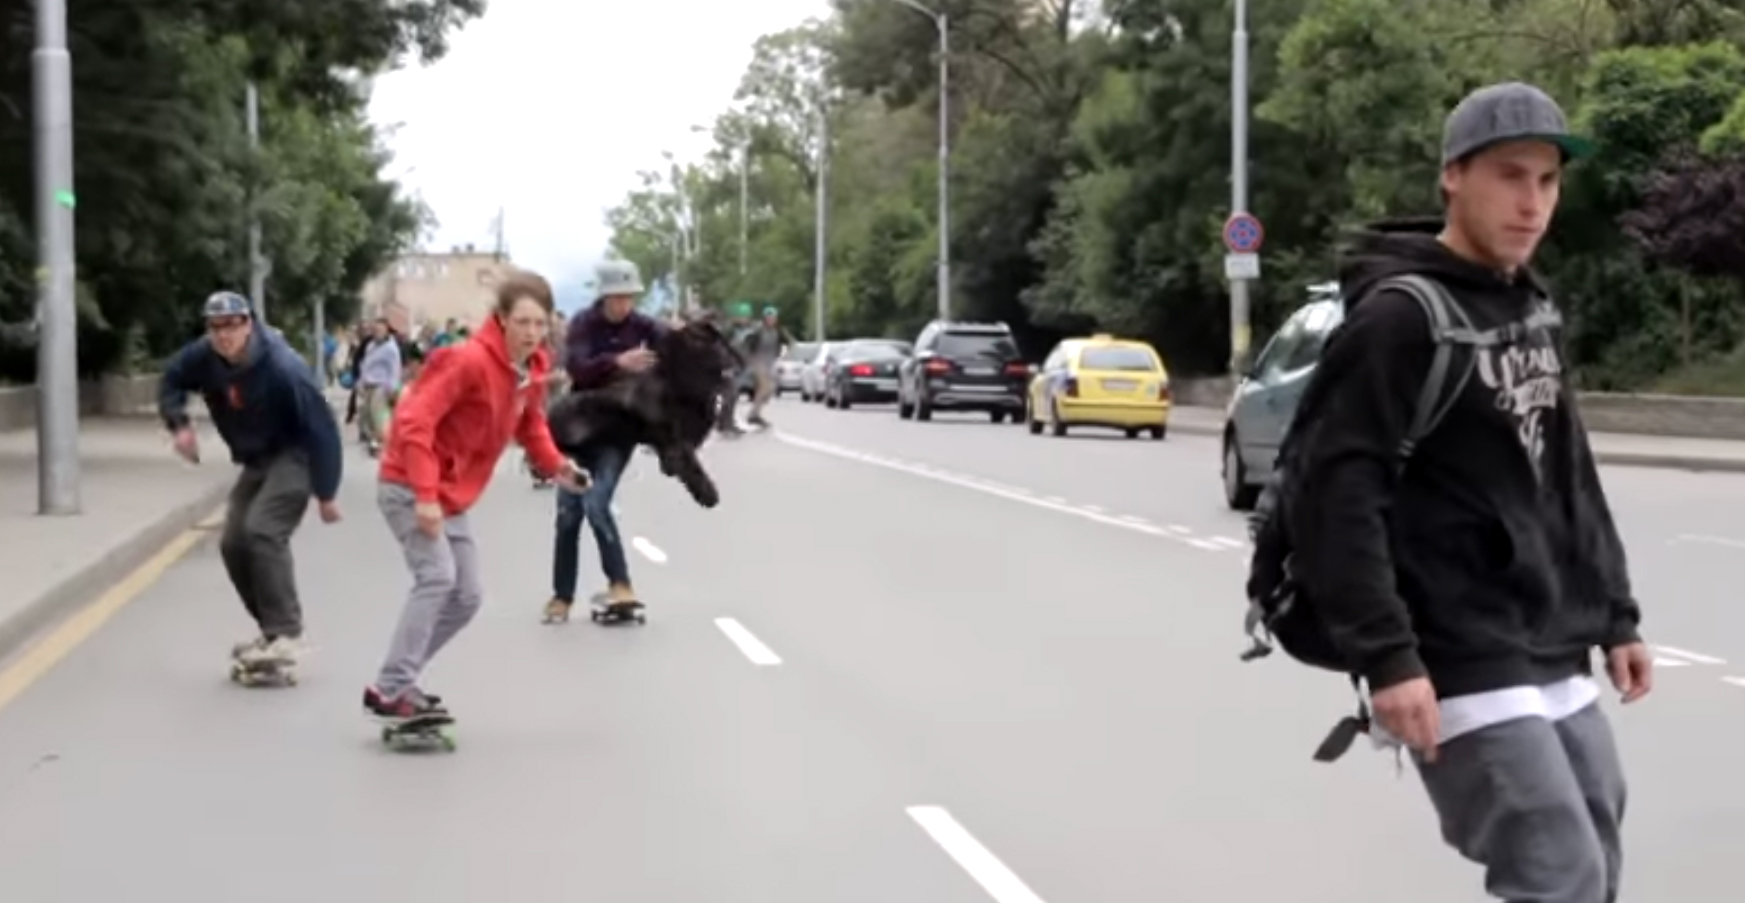 Go Skateboarding Day - Sofia (ВИДЕО)